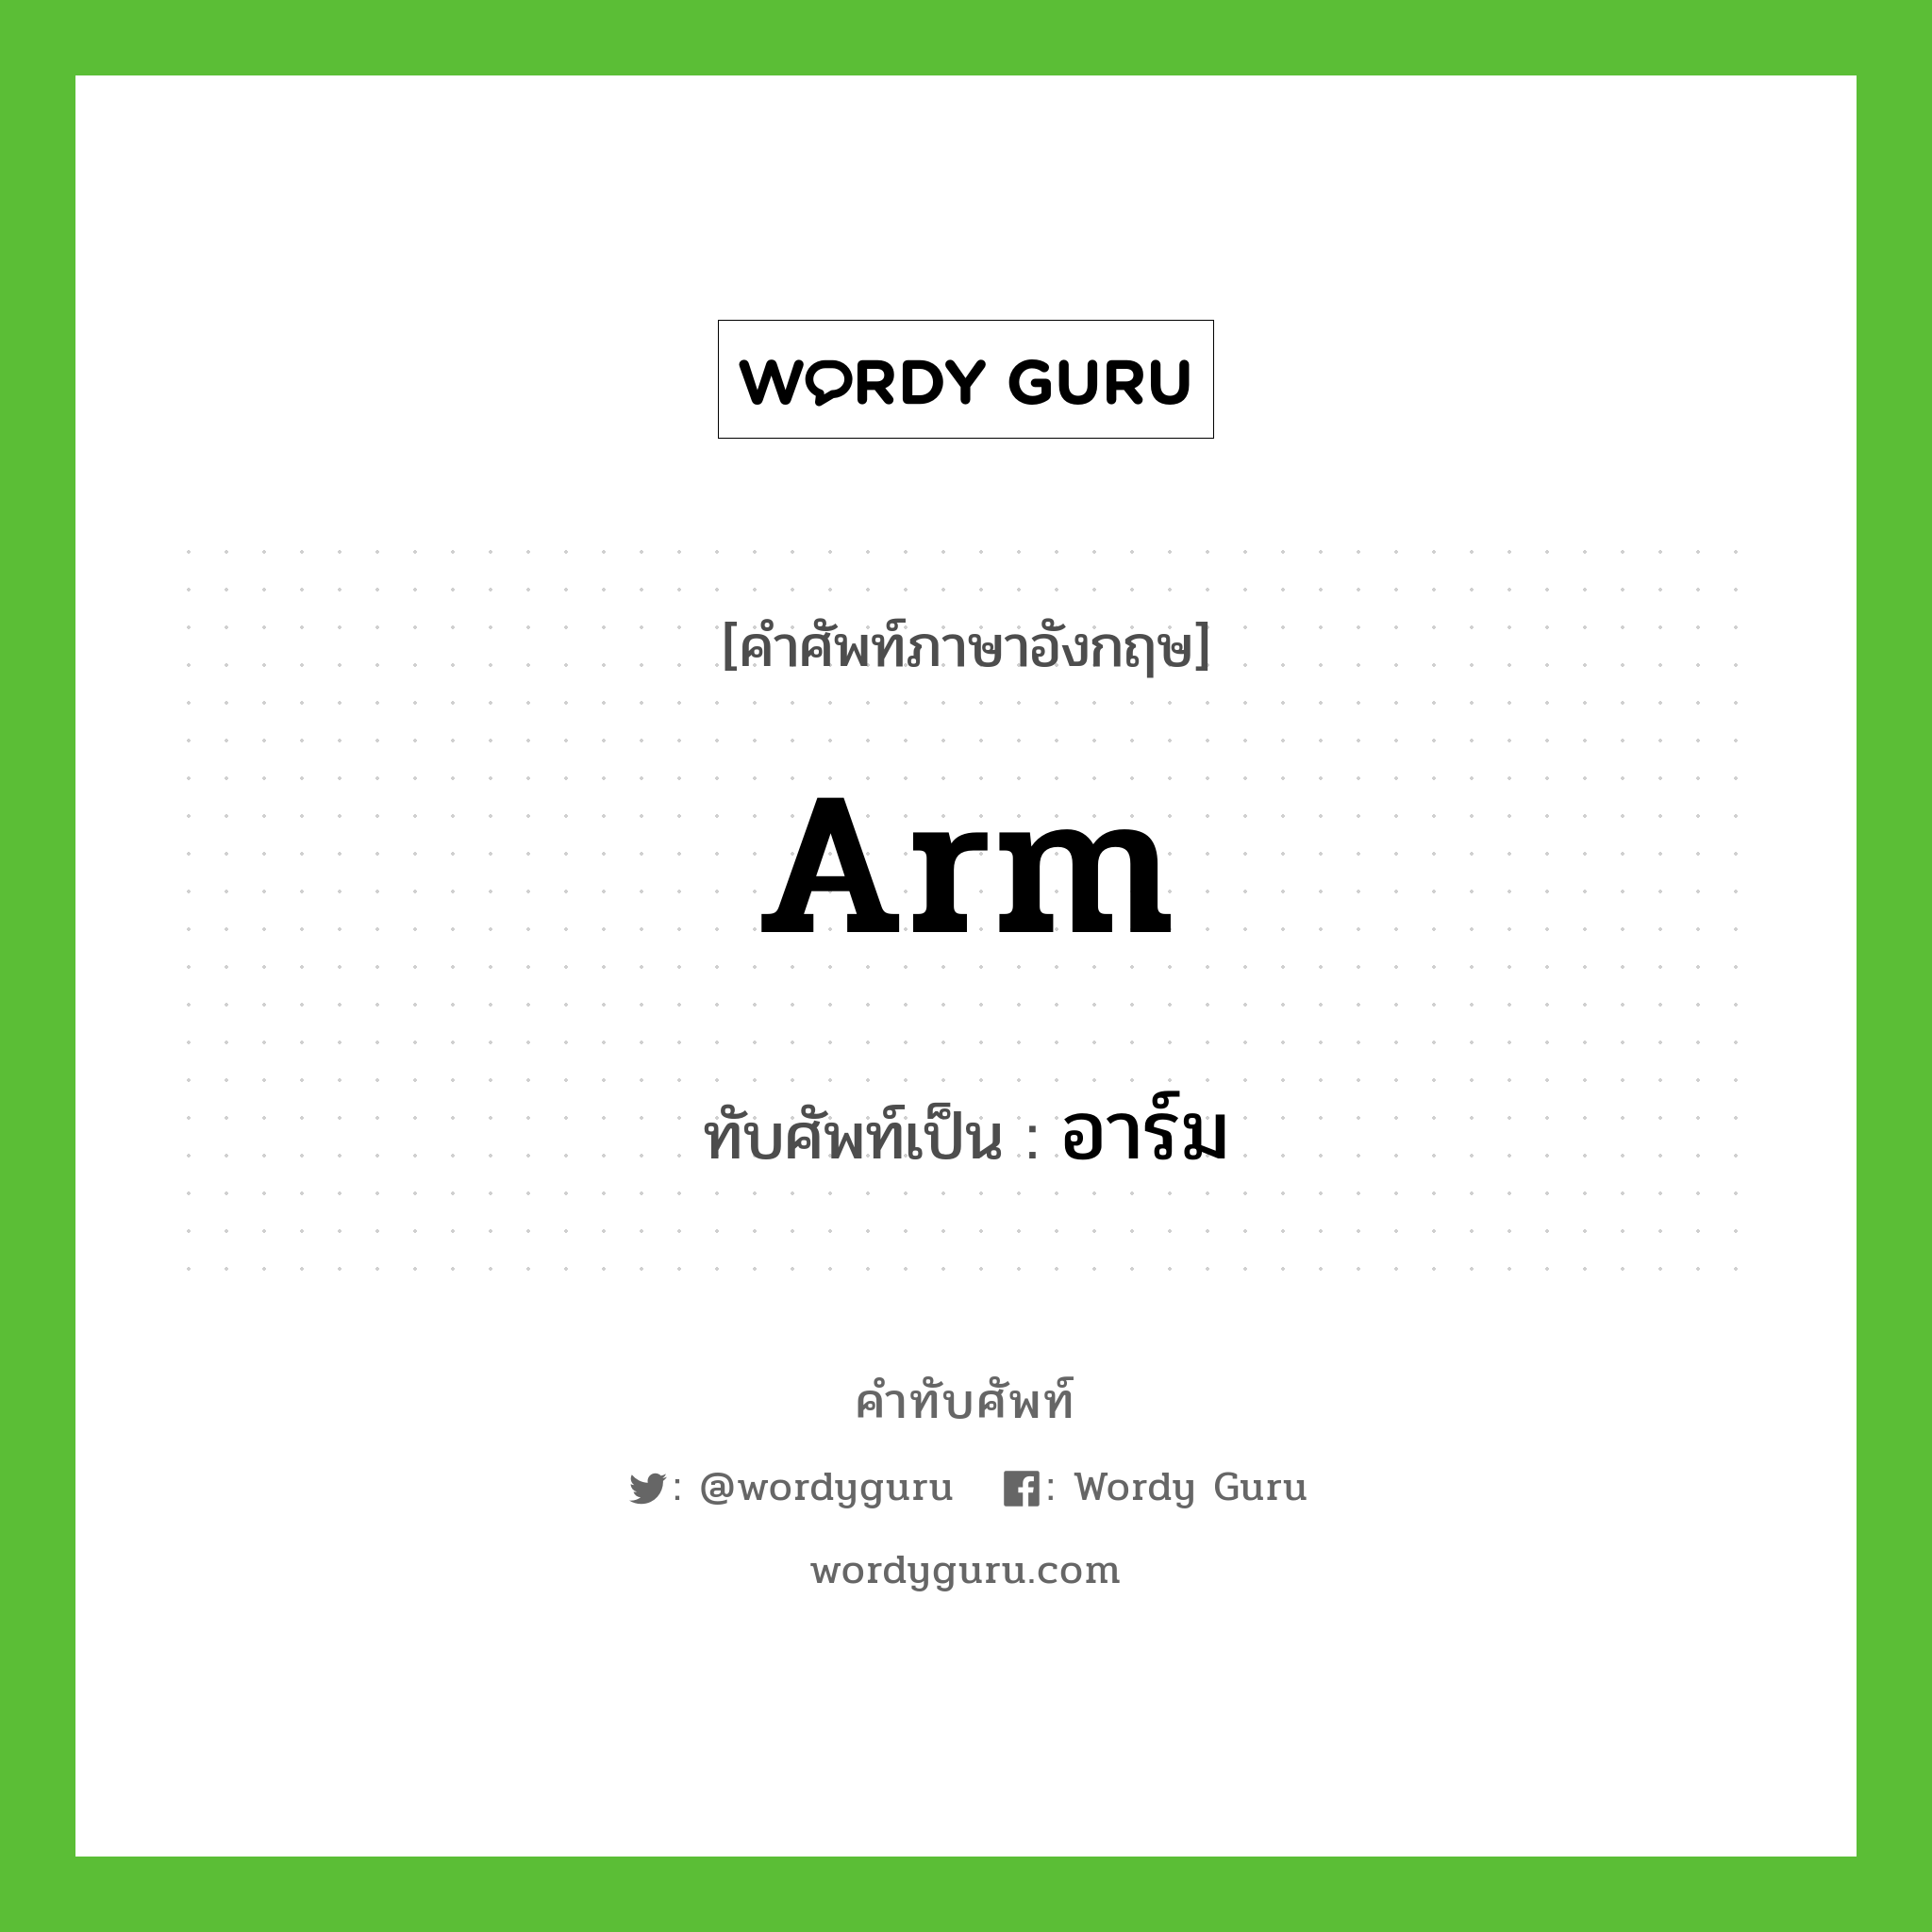 arm เขียนเป็นคำไทยว่าอะไร?, คำศัพท์ภาษาอังกฤษ arm ทับศัพท์เป็น อาร์ม